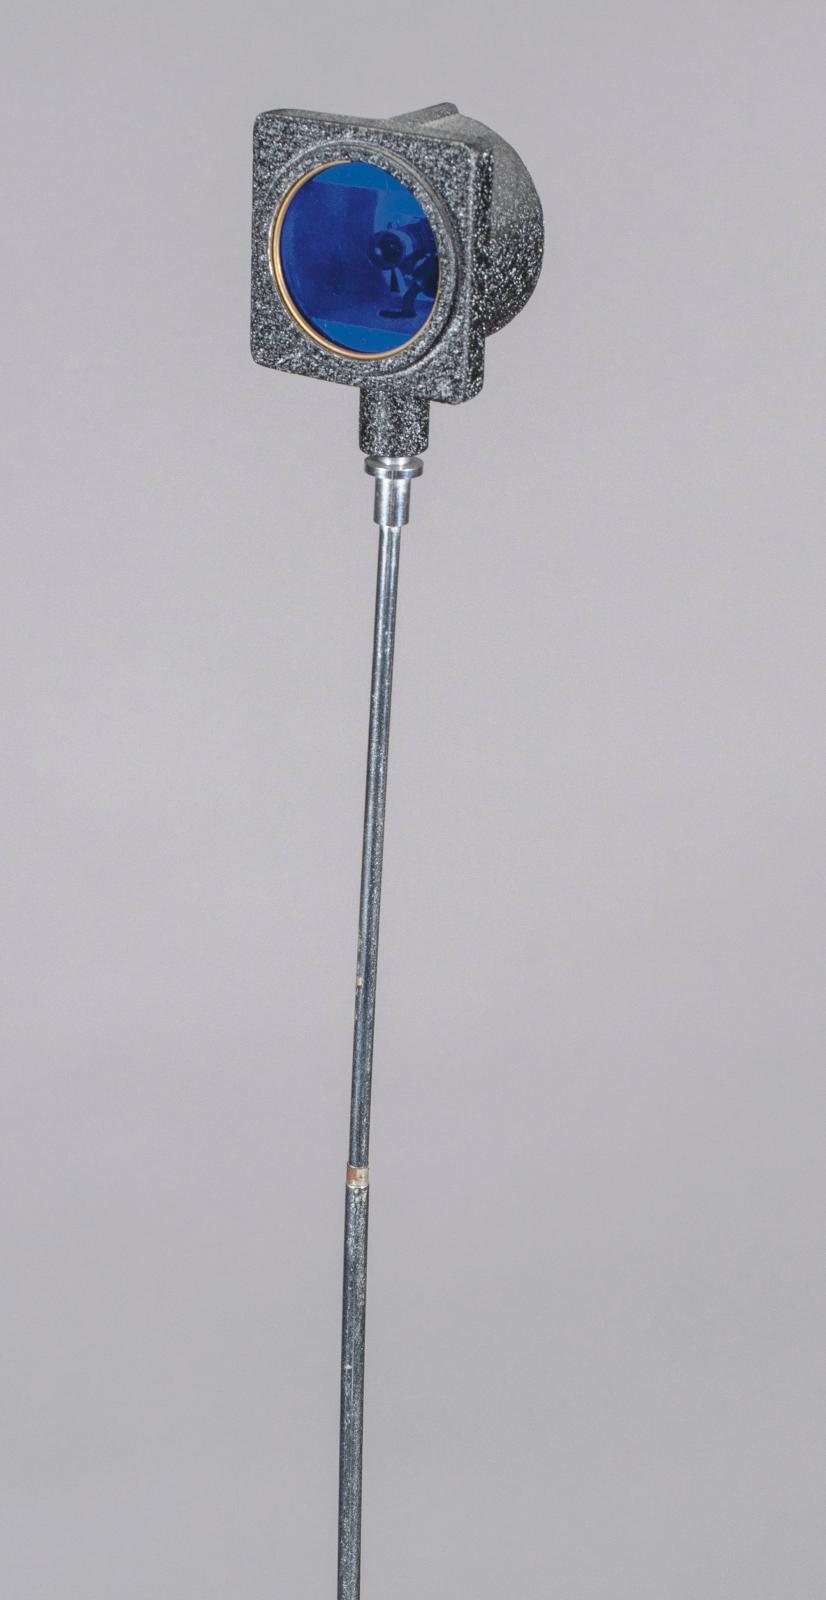 Vassilakis Takis (1925-2019), Signal n° 44, série I, 1974, feu bleu clignotant sur une tige métallique télescopique, base quadrangulaire à